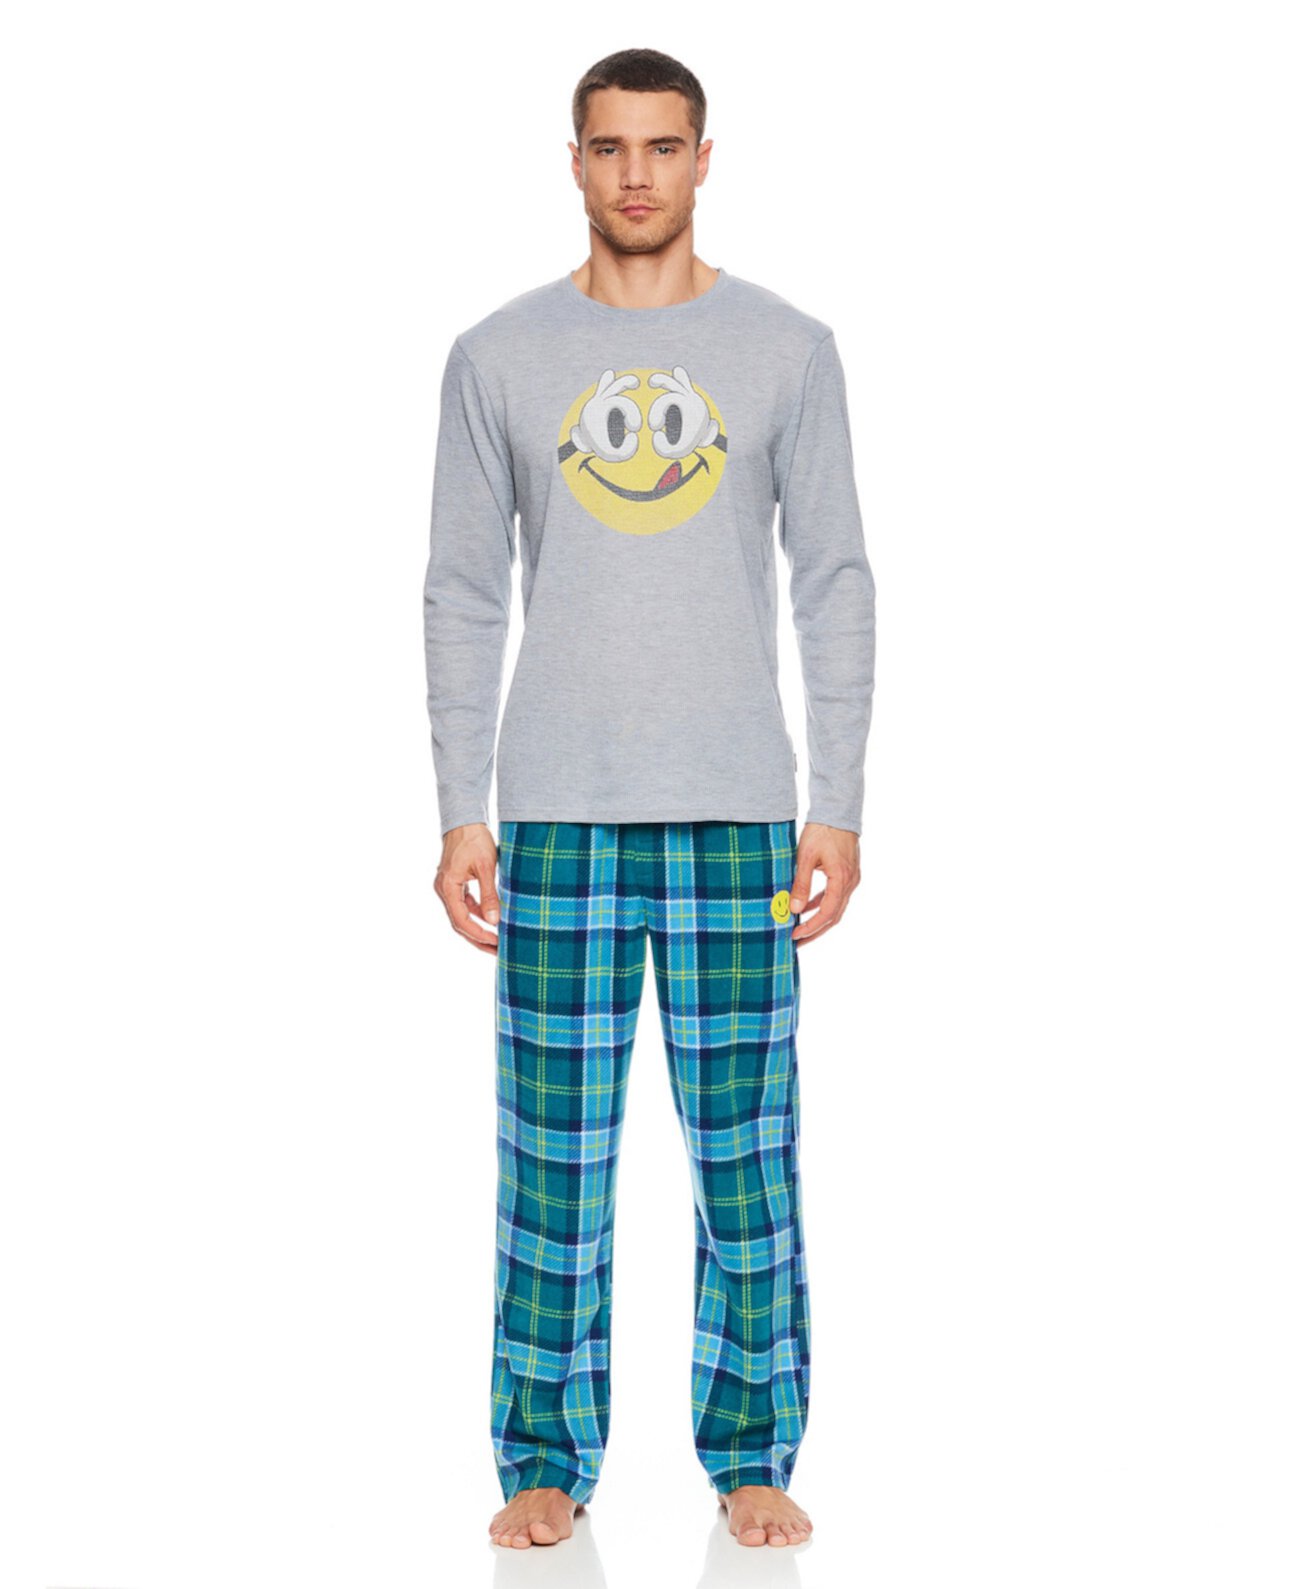 Мужской топ, шорты и пижама, комплект из 3 предметов JOE BOXER